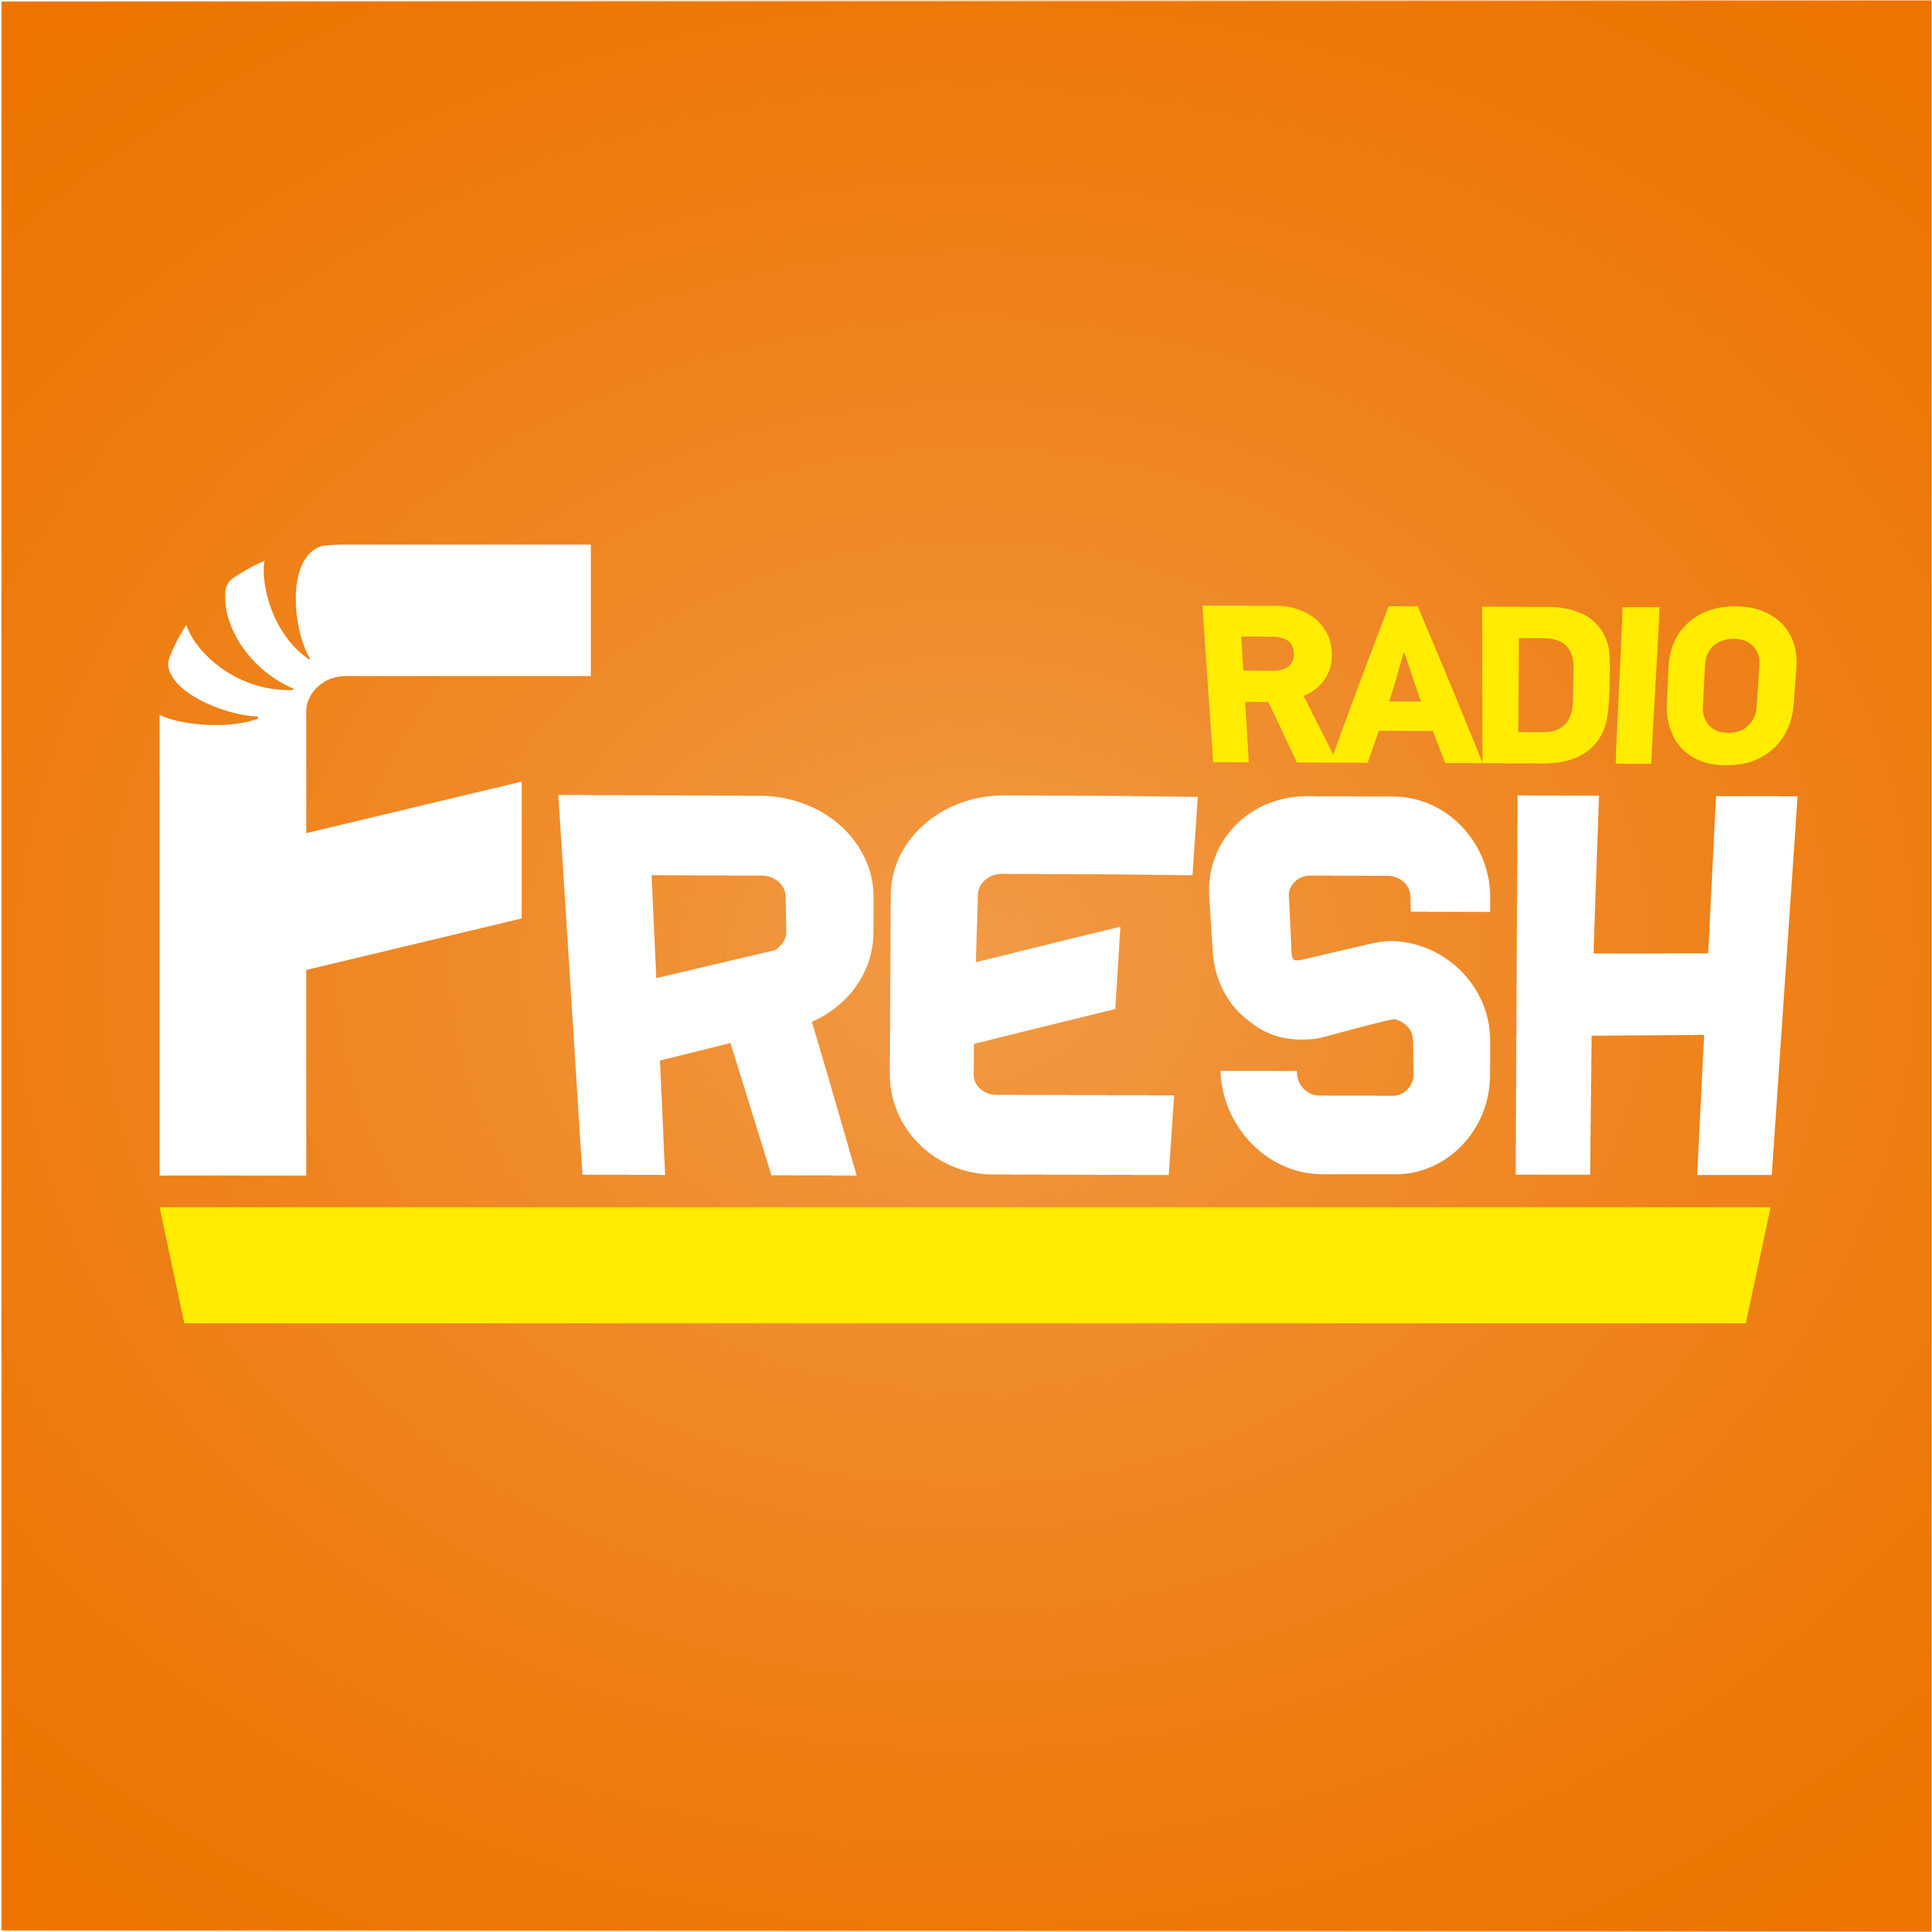 Включи радио северный. Радио Фреш. Радио Фреш логотип. Свежее радио. Логотип радиостанции Бим.